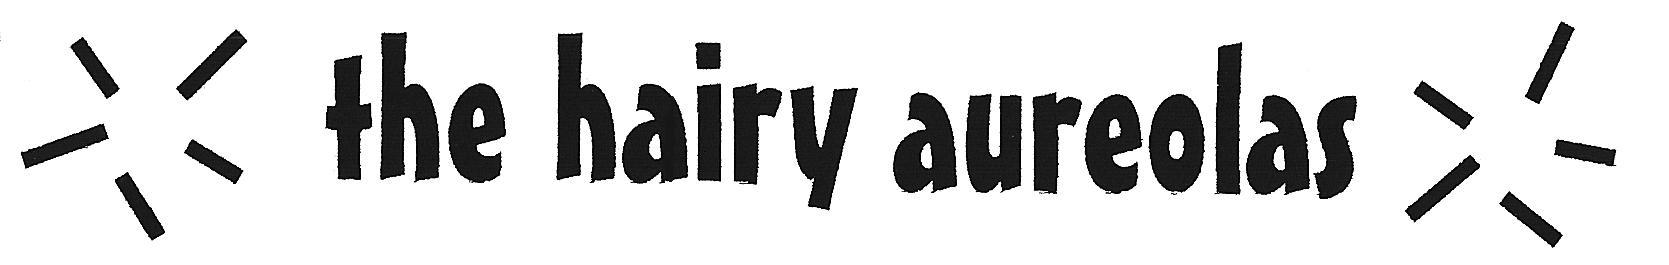 Hariy Aureolas logo